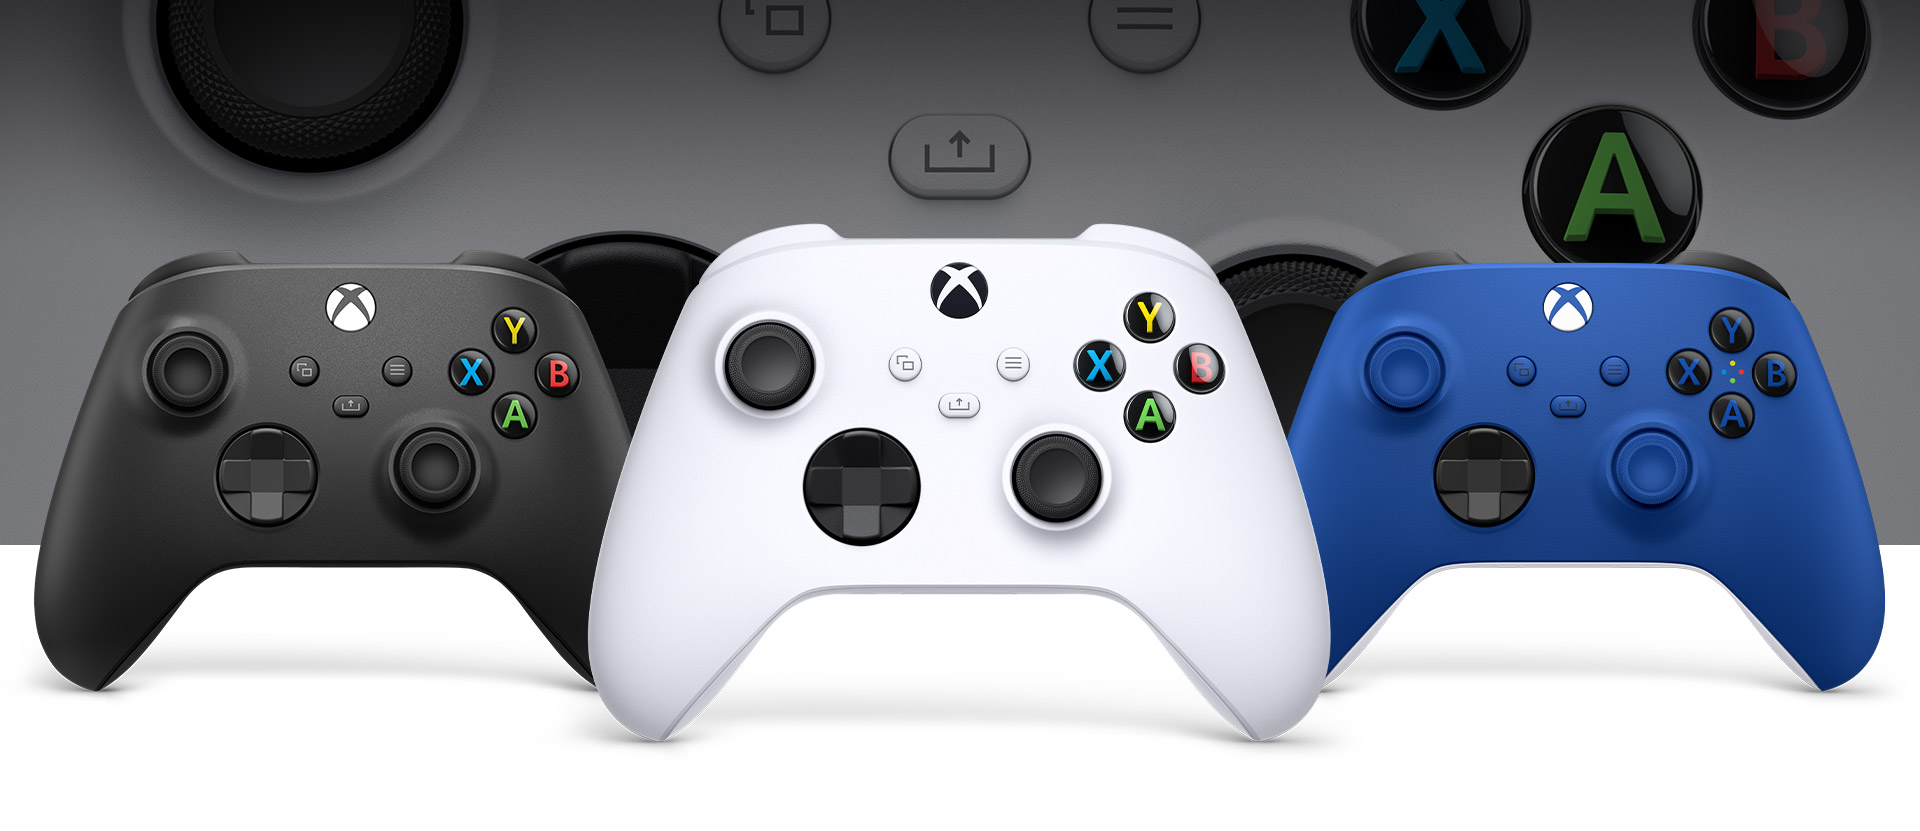 Μπροστινή όψη του ασύρματου χειριστηρίου Xbox σε λευκό Robot, με μαύρο ανθρακί στα αριστερά και έντονο μπλε στα δεξιά